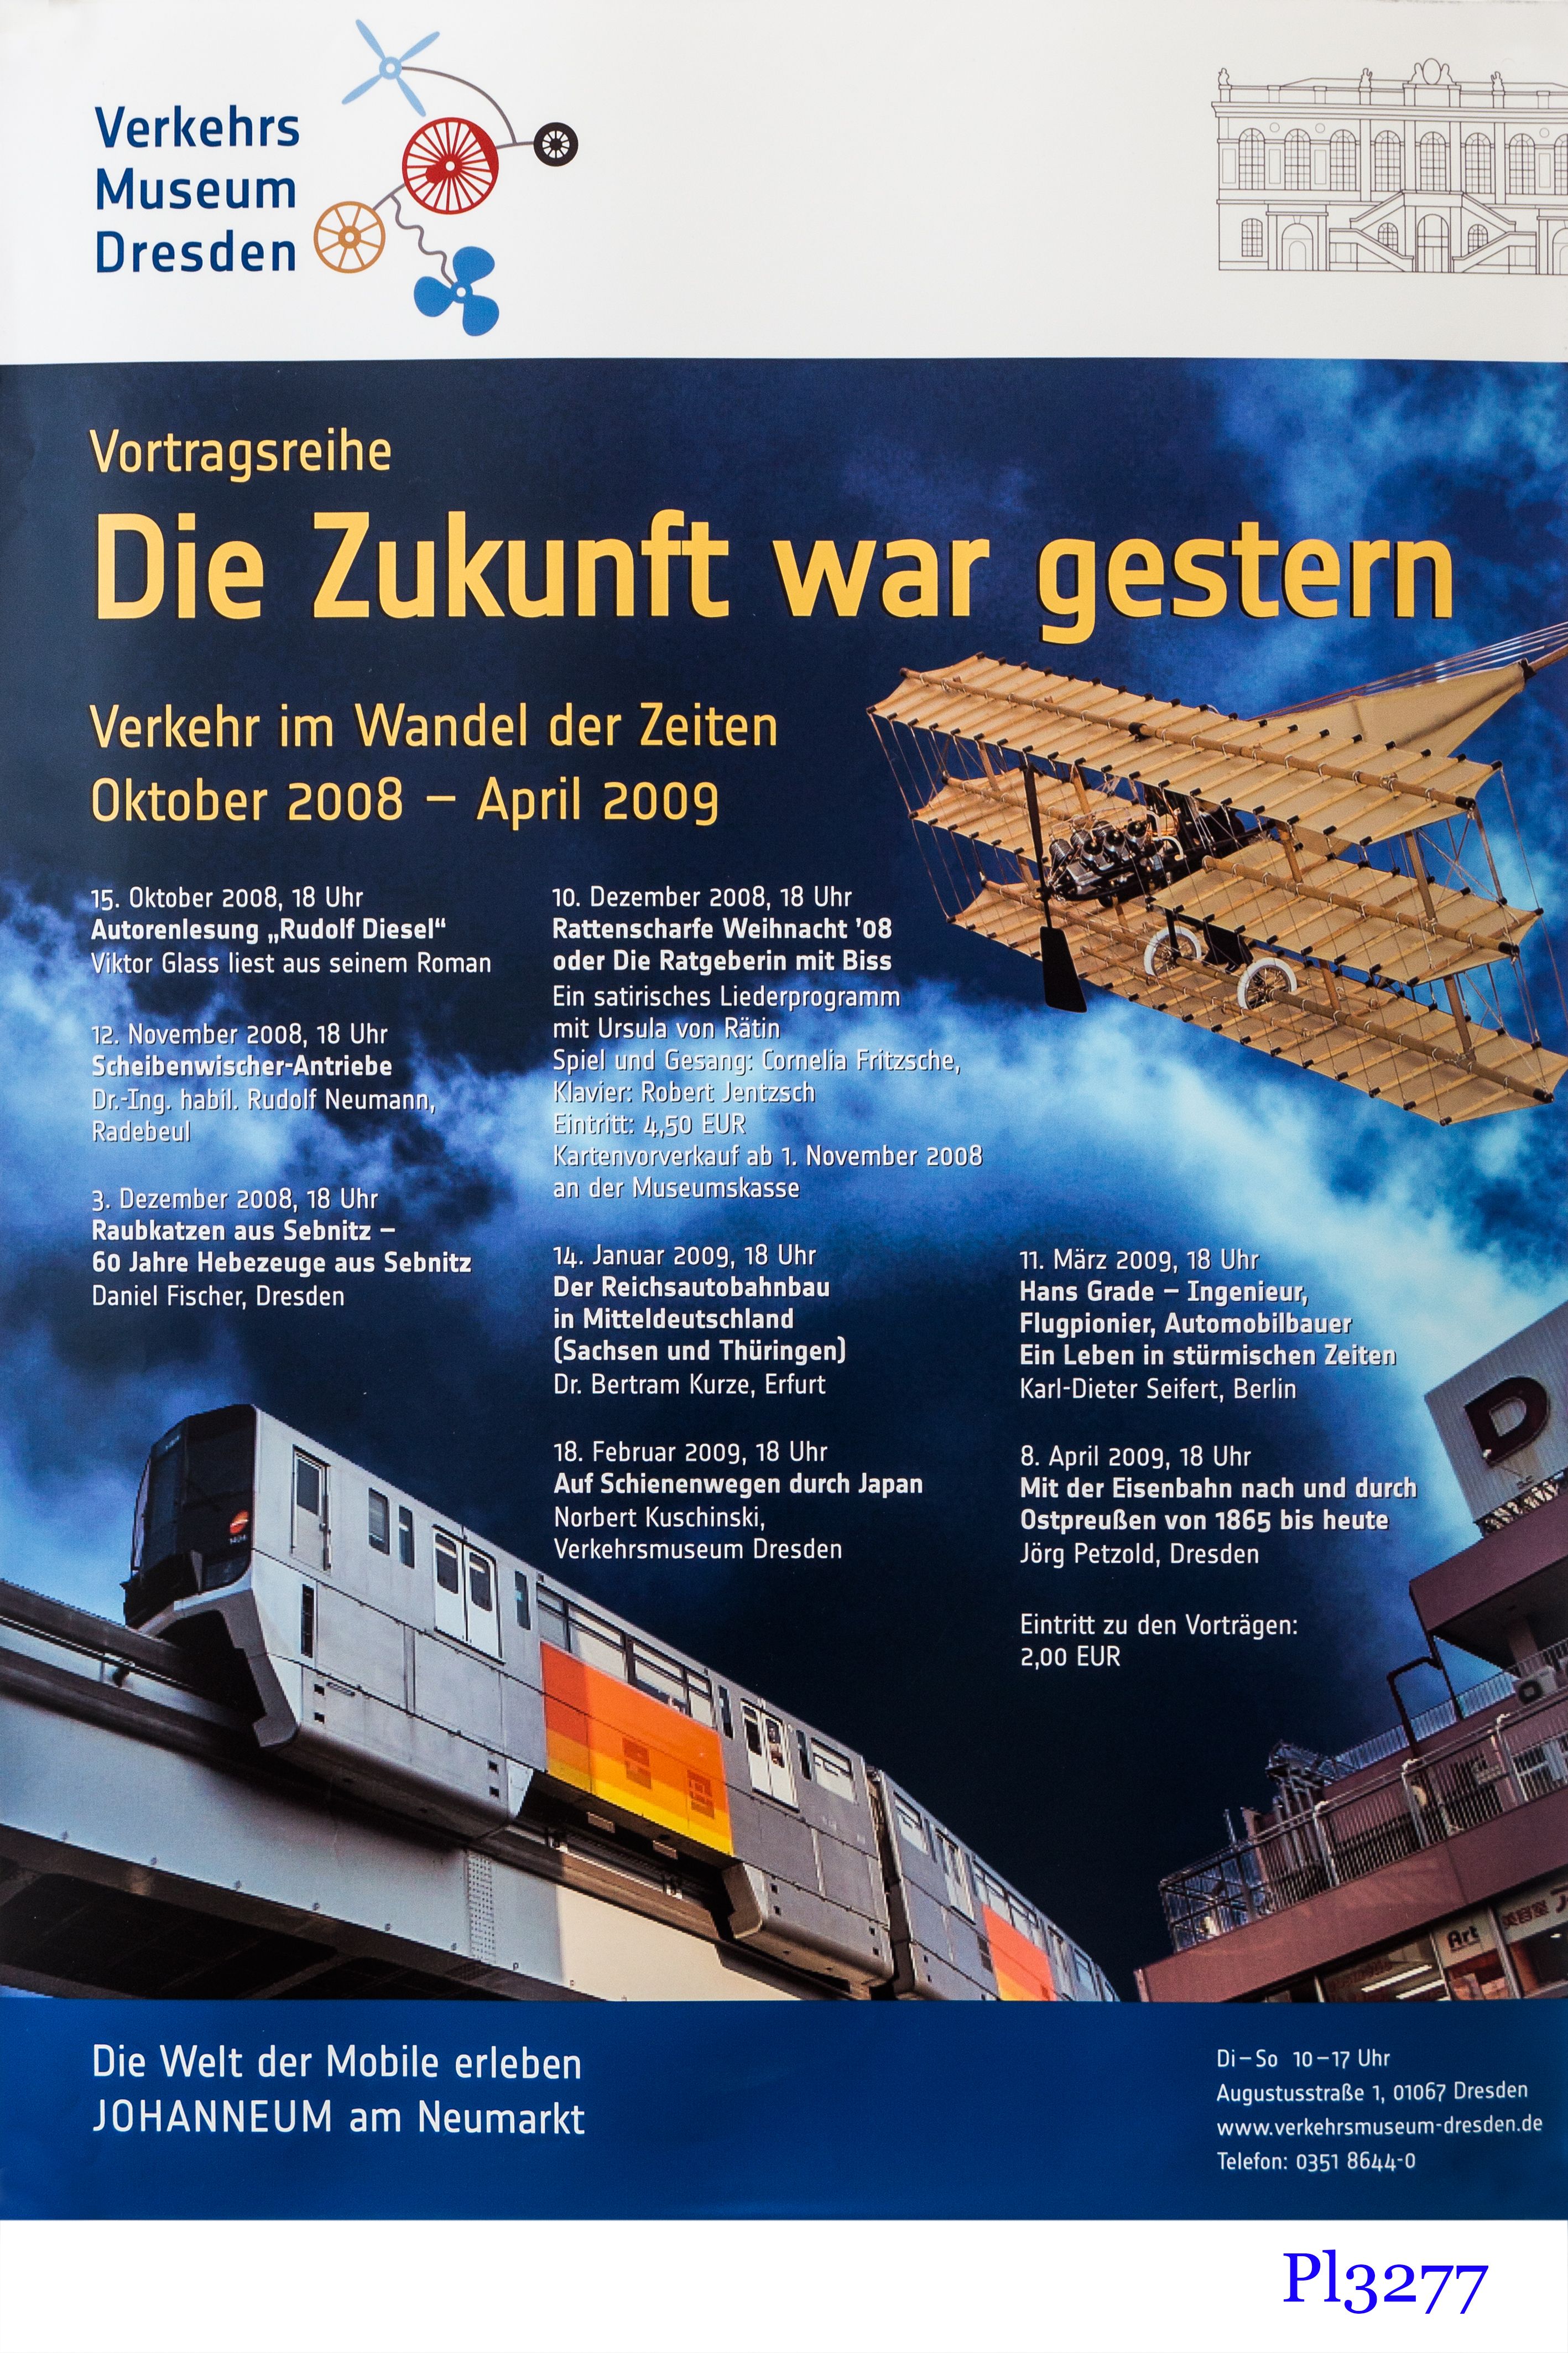 Plakat zur Vortragsreihe „Die Zukunft war gestern“ im Verkehrsmuseum Dresden, 2008